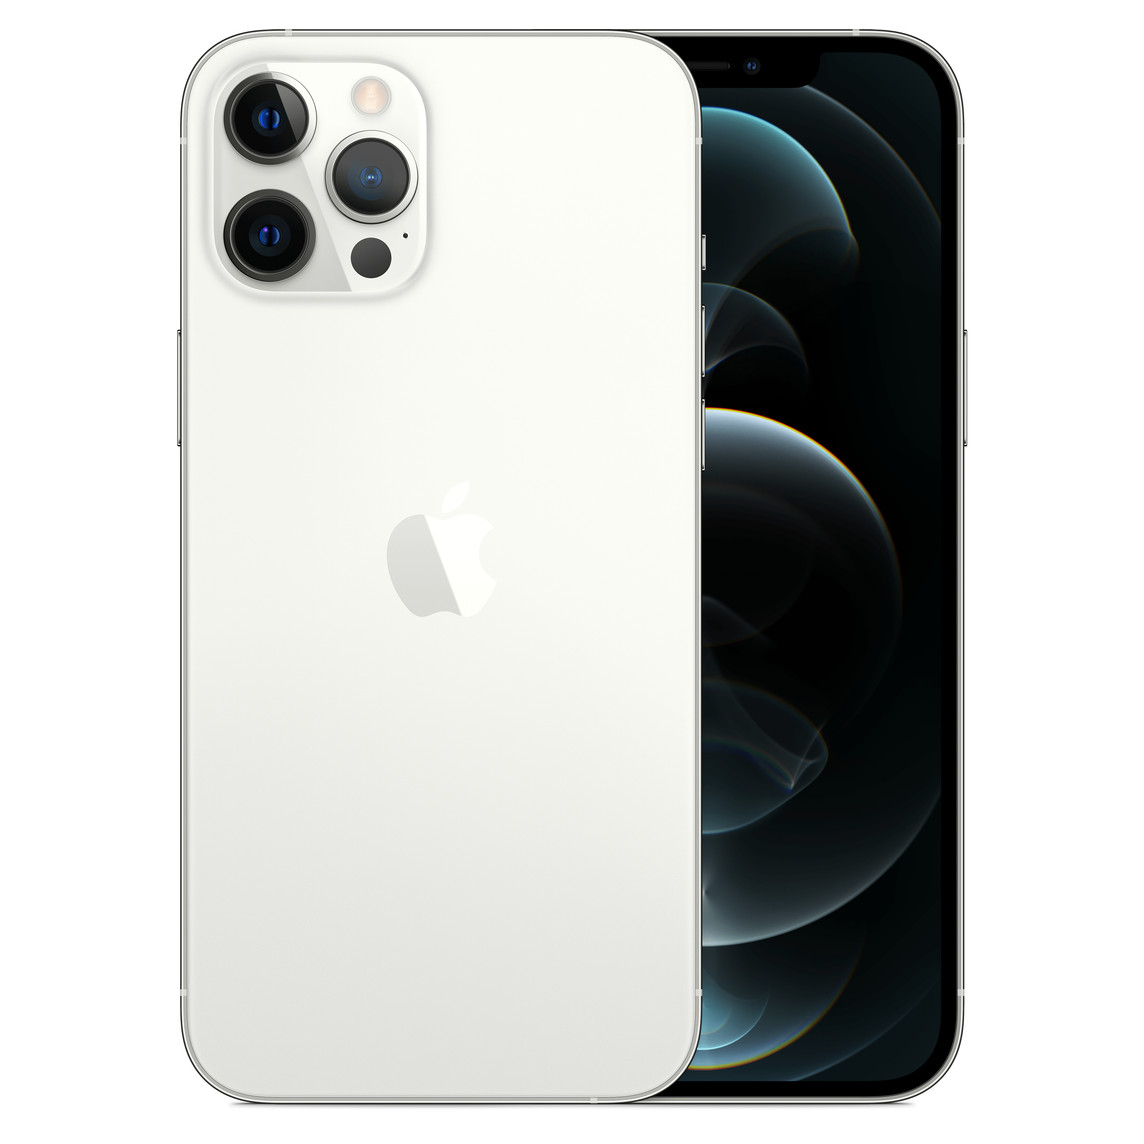 iPhone 12 Pro Max argent, système caméra Pro avec flash True Tone, scanneur lidar, microphone, logo Apple centré et écran intégral sur l’avant.